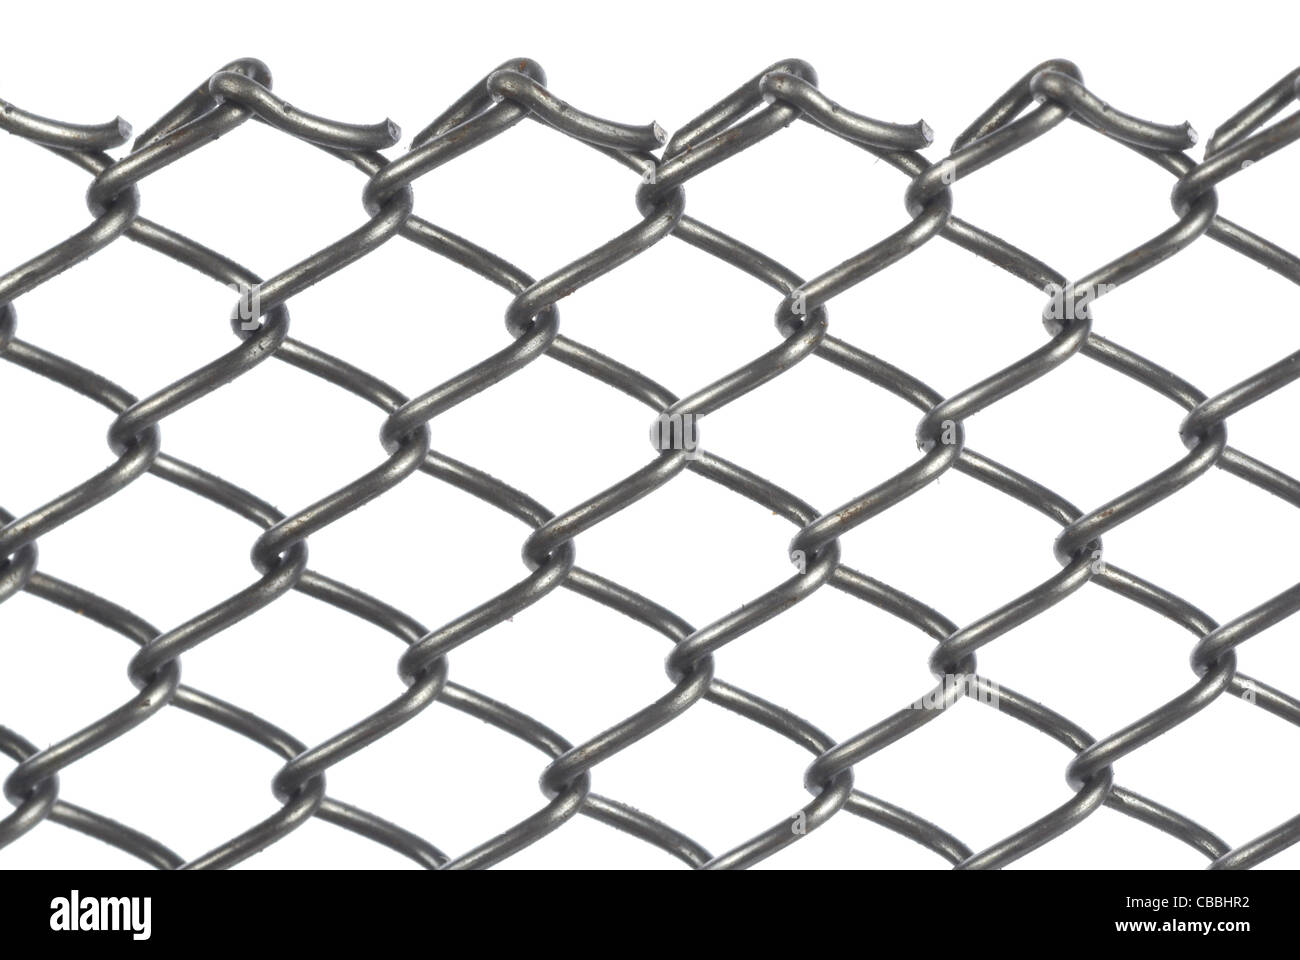 Resumen Antecedentes La cadena fronteriza diseño gráfico de trama de elementos de dibujo industrial grid iron mantener enlace metal malla metalli Foto de stock